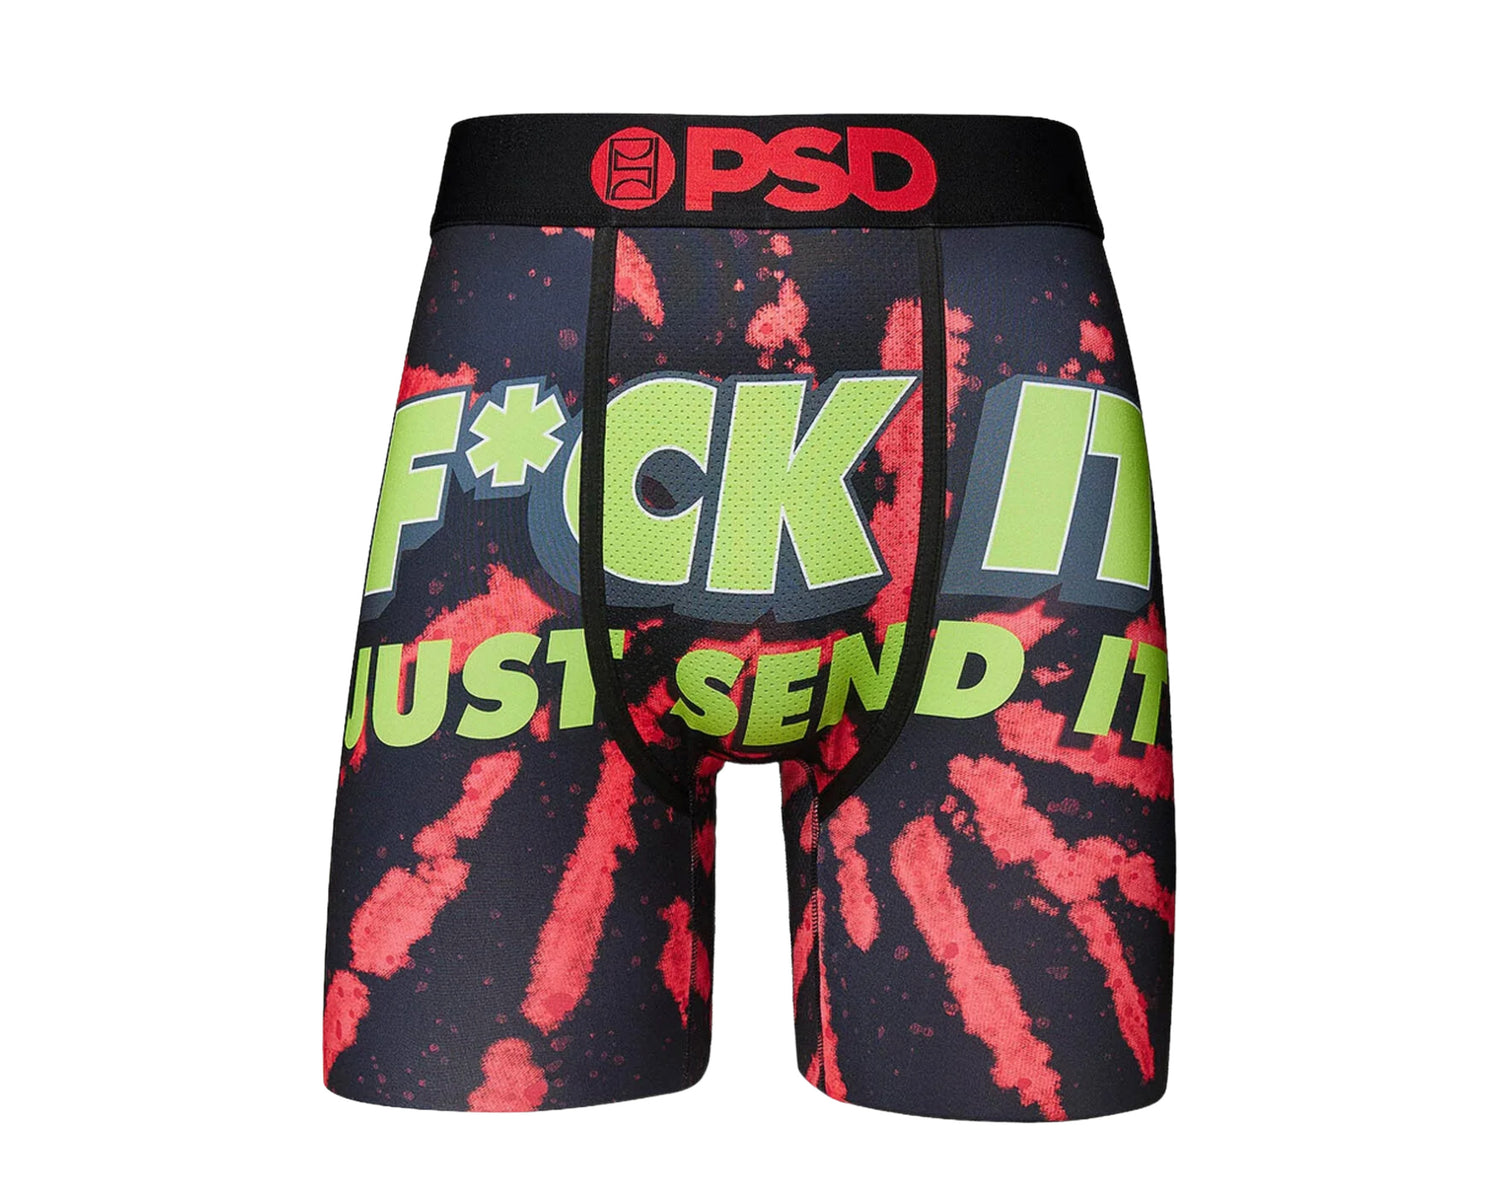 PSD F*CK It Boxer Briefs Men's Underwear